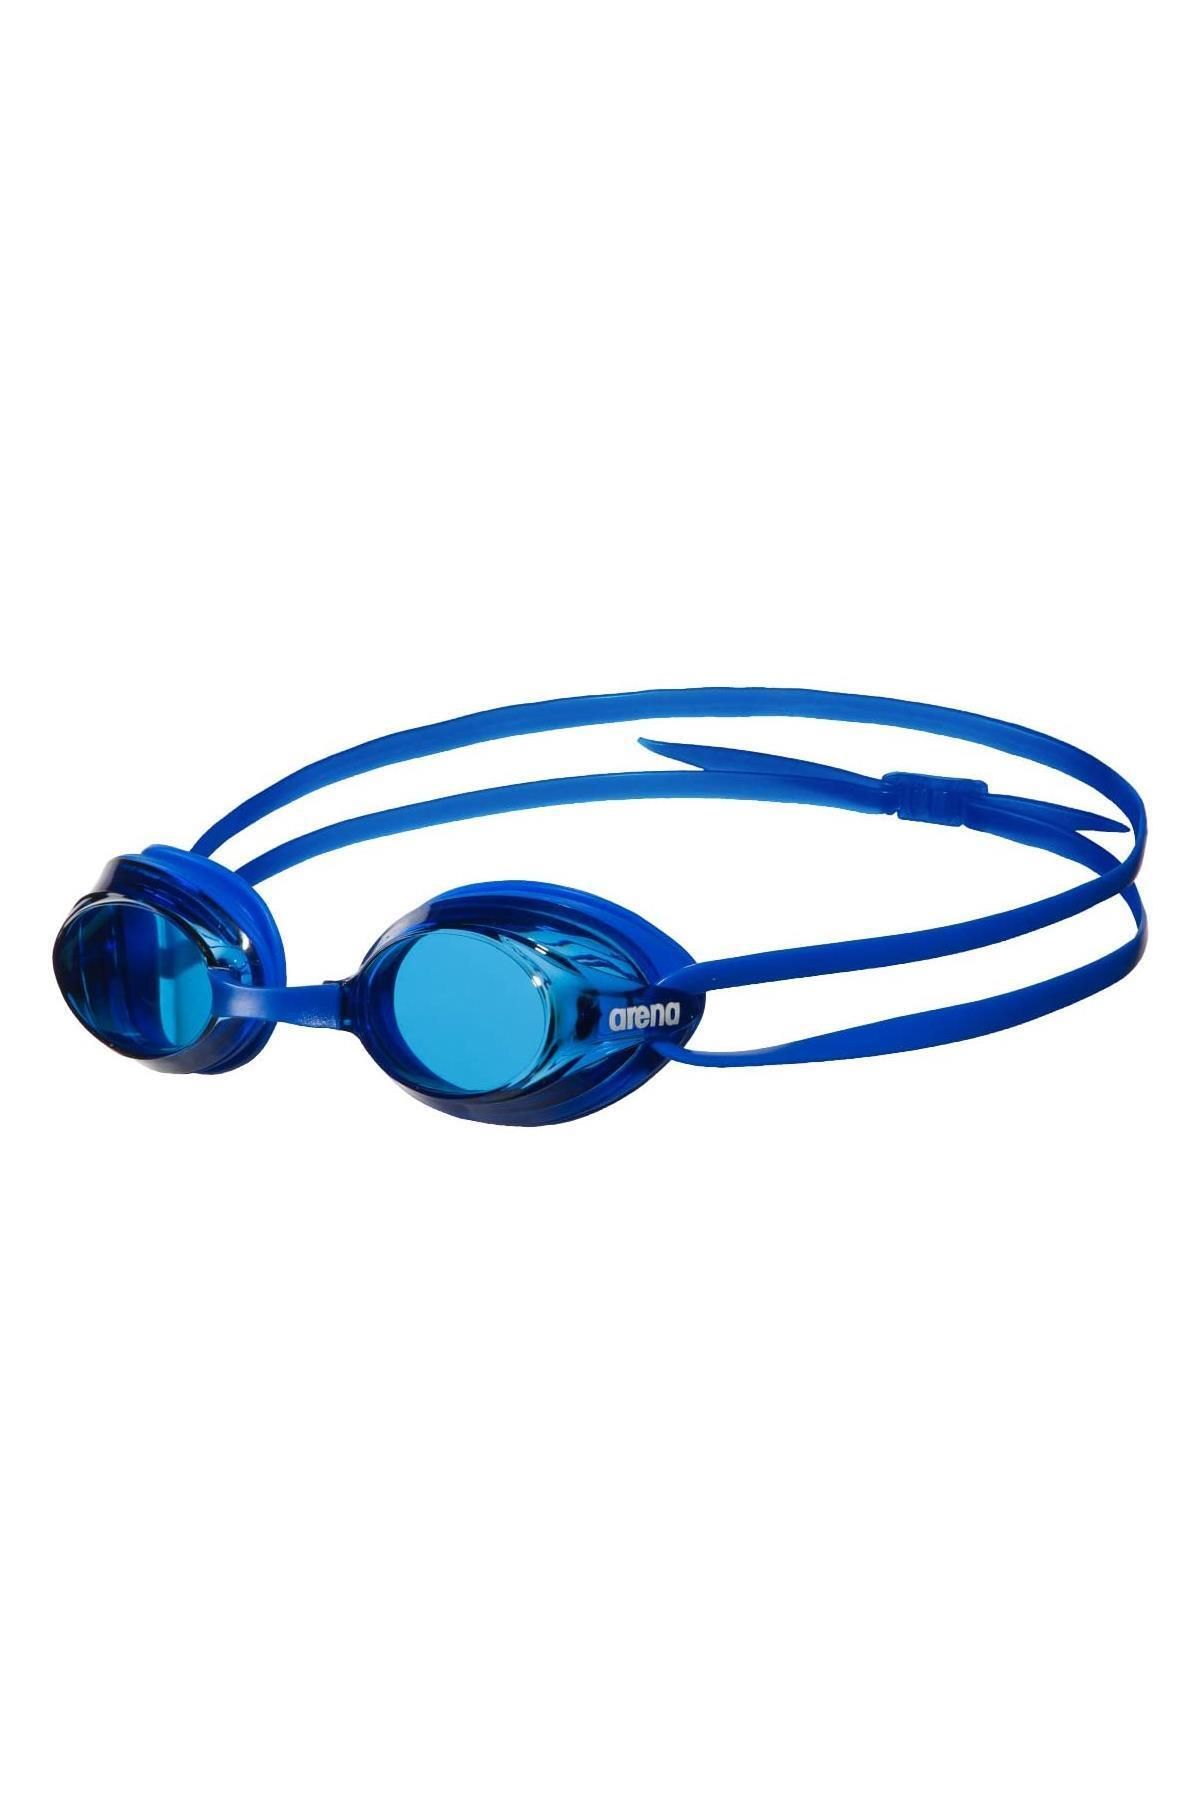 Arena Deniz Gözlüğü - Drıve 3 Mavi Yüzücü Gözlüğü - 1e03577